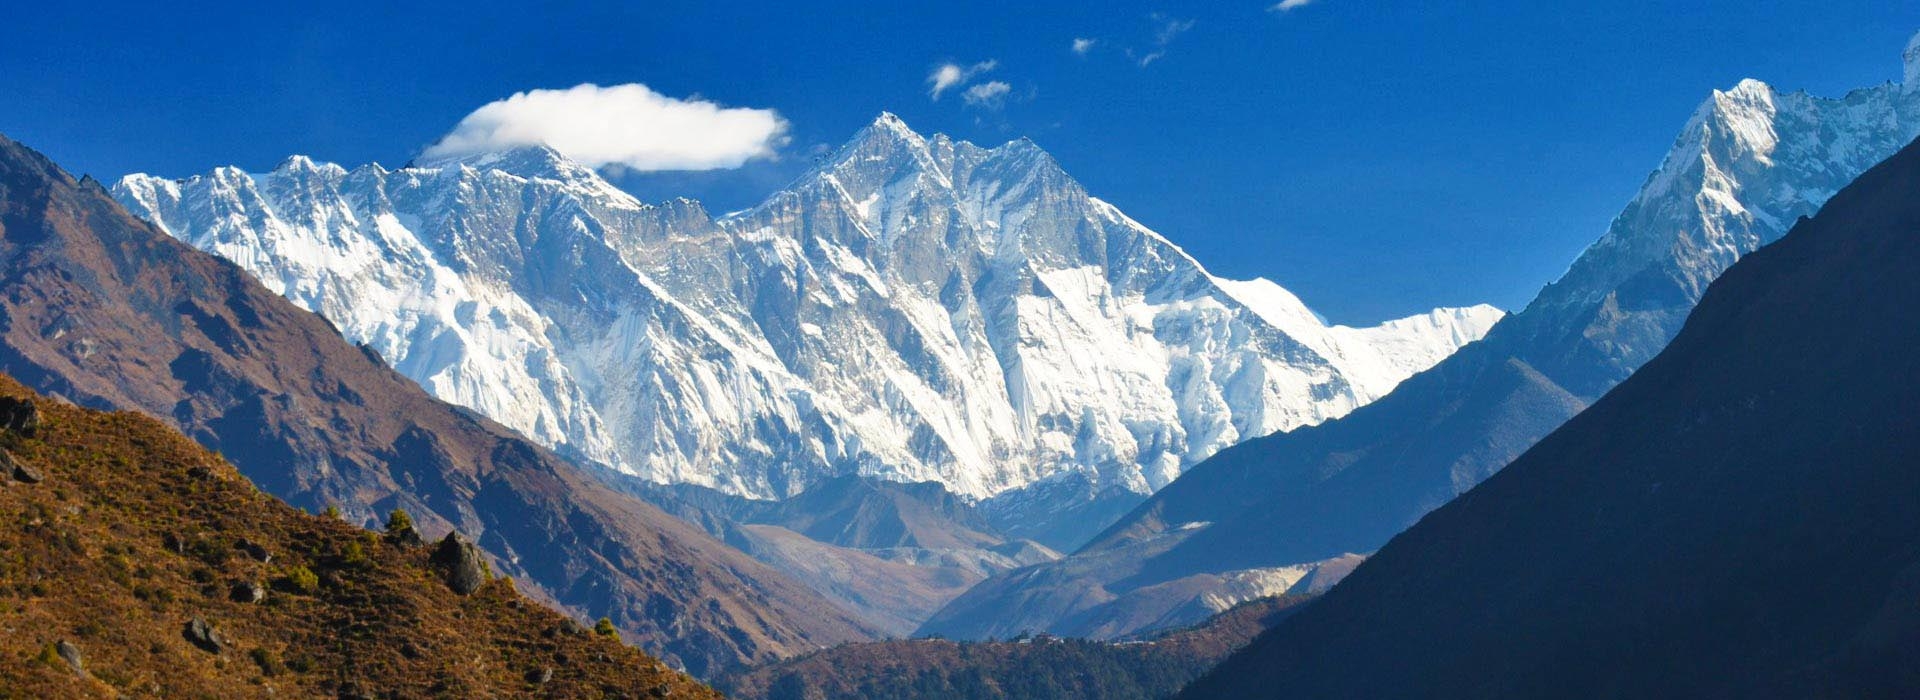 Mountain Flight-Everest